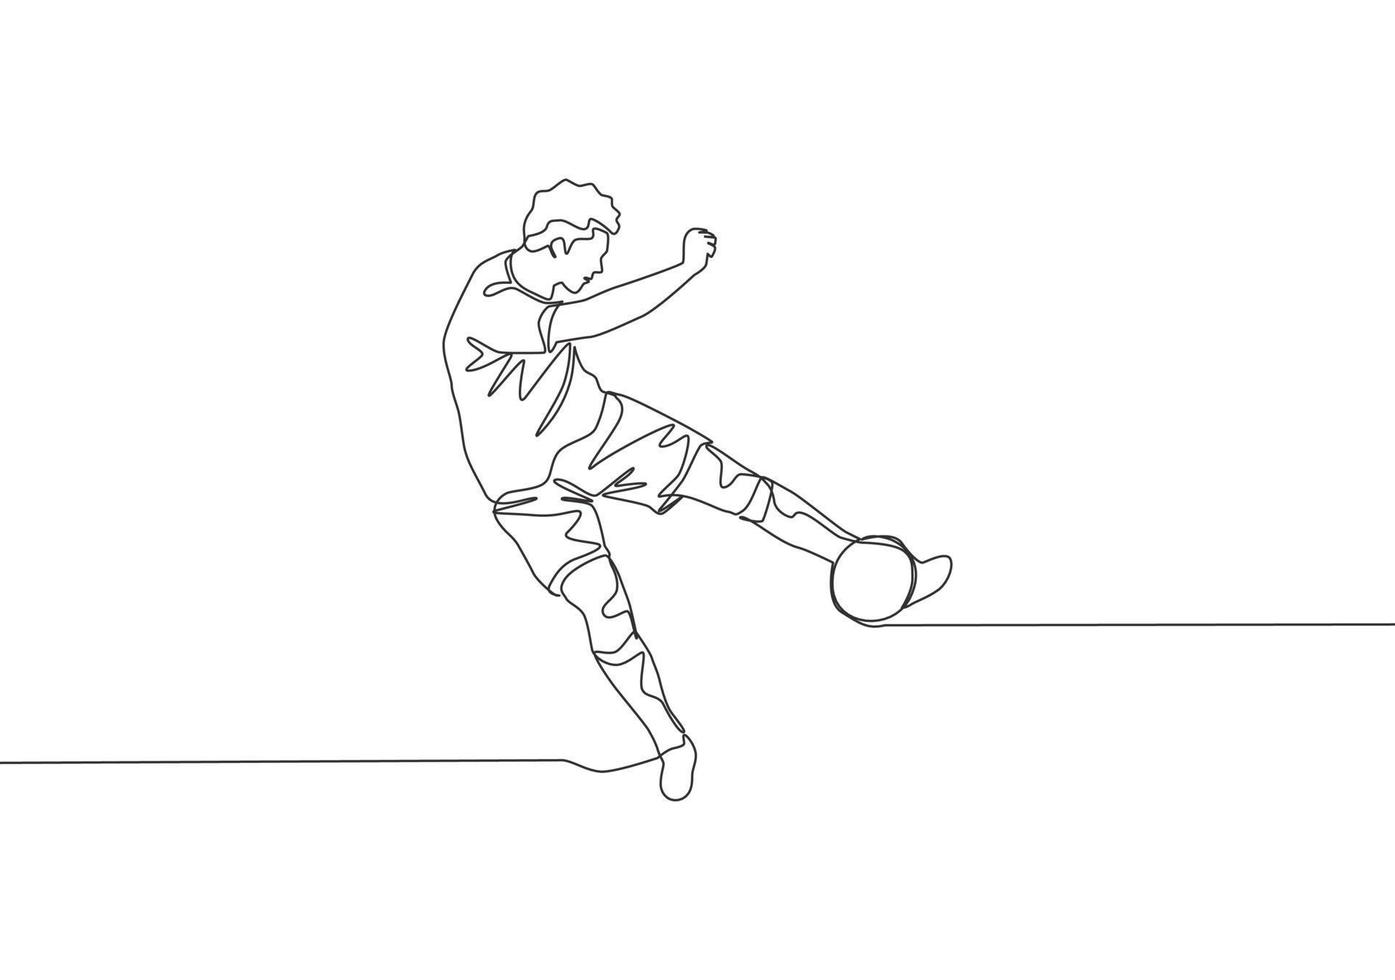 uno continuo línea dibujo de joven talentoso fútbol americano jugador disparo el pelota con primero hora patada técnica. fútbol partido Deportes concepto. soltero línea dibujar diseño vector ilustración